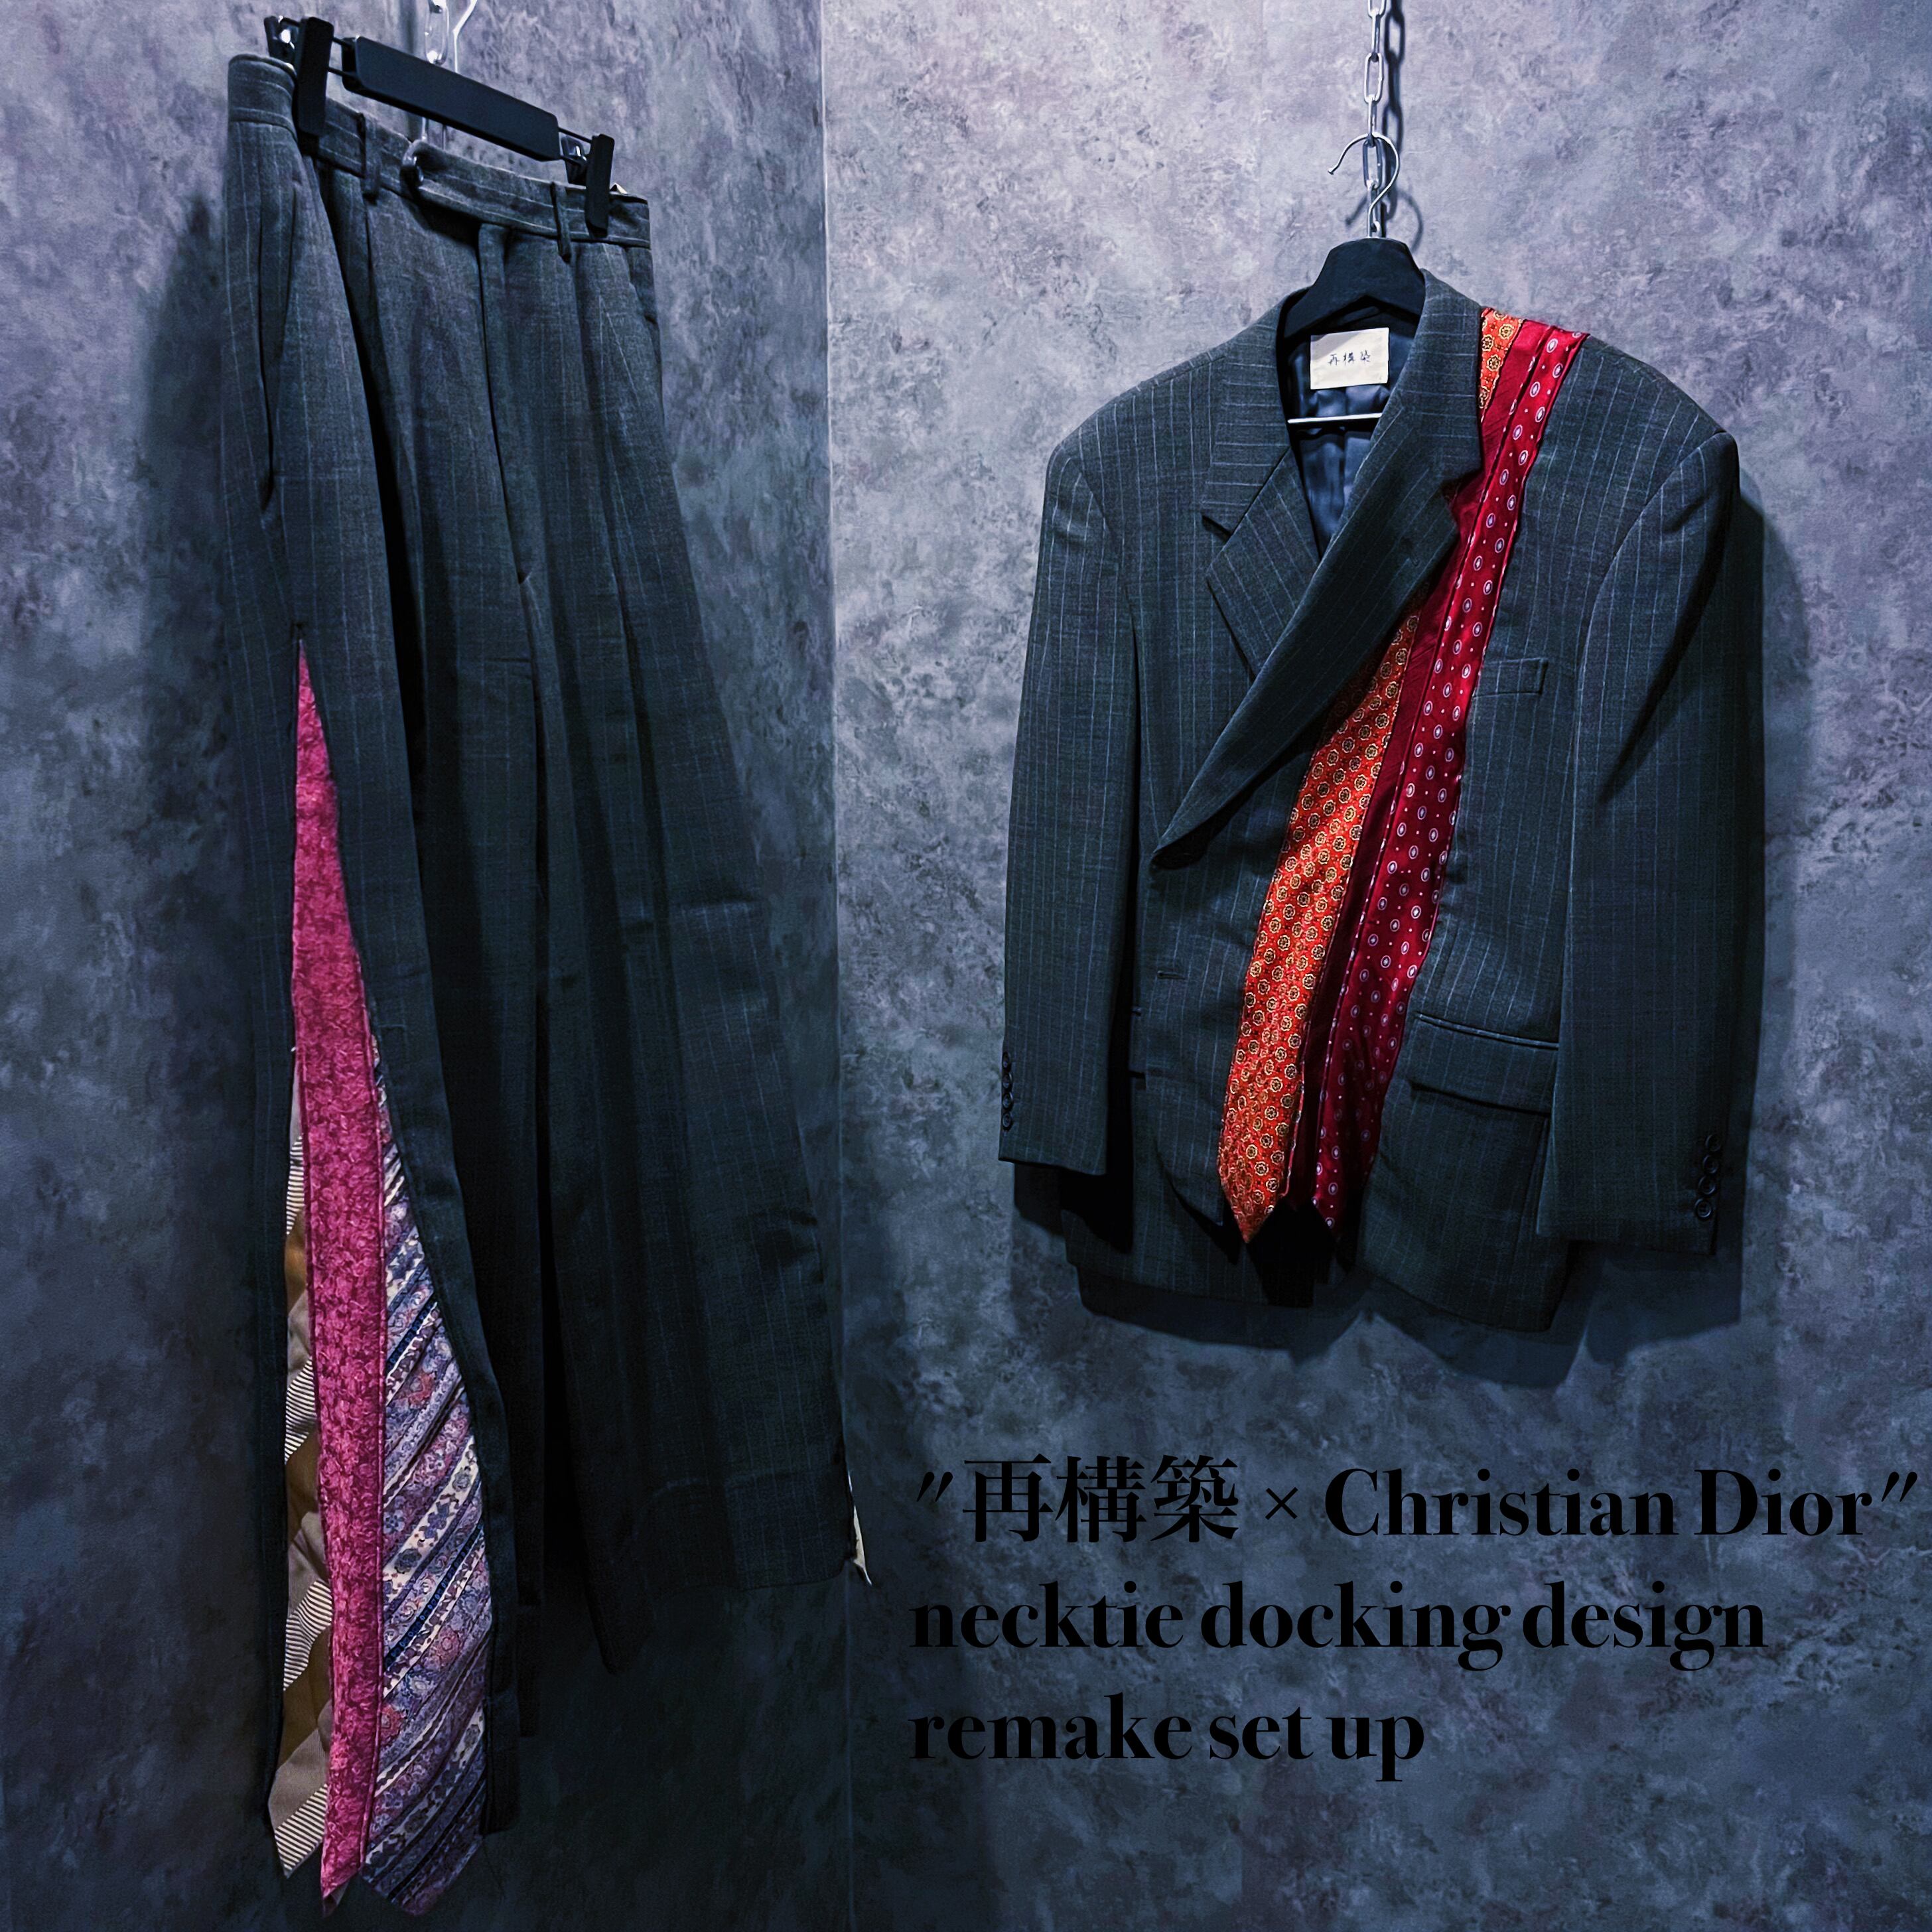 doppio"再構築 × Christian Dior" necktie docking design remake